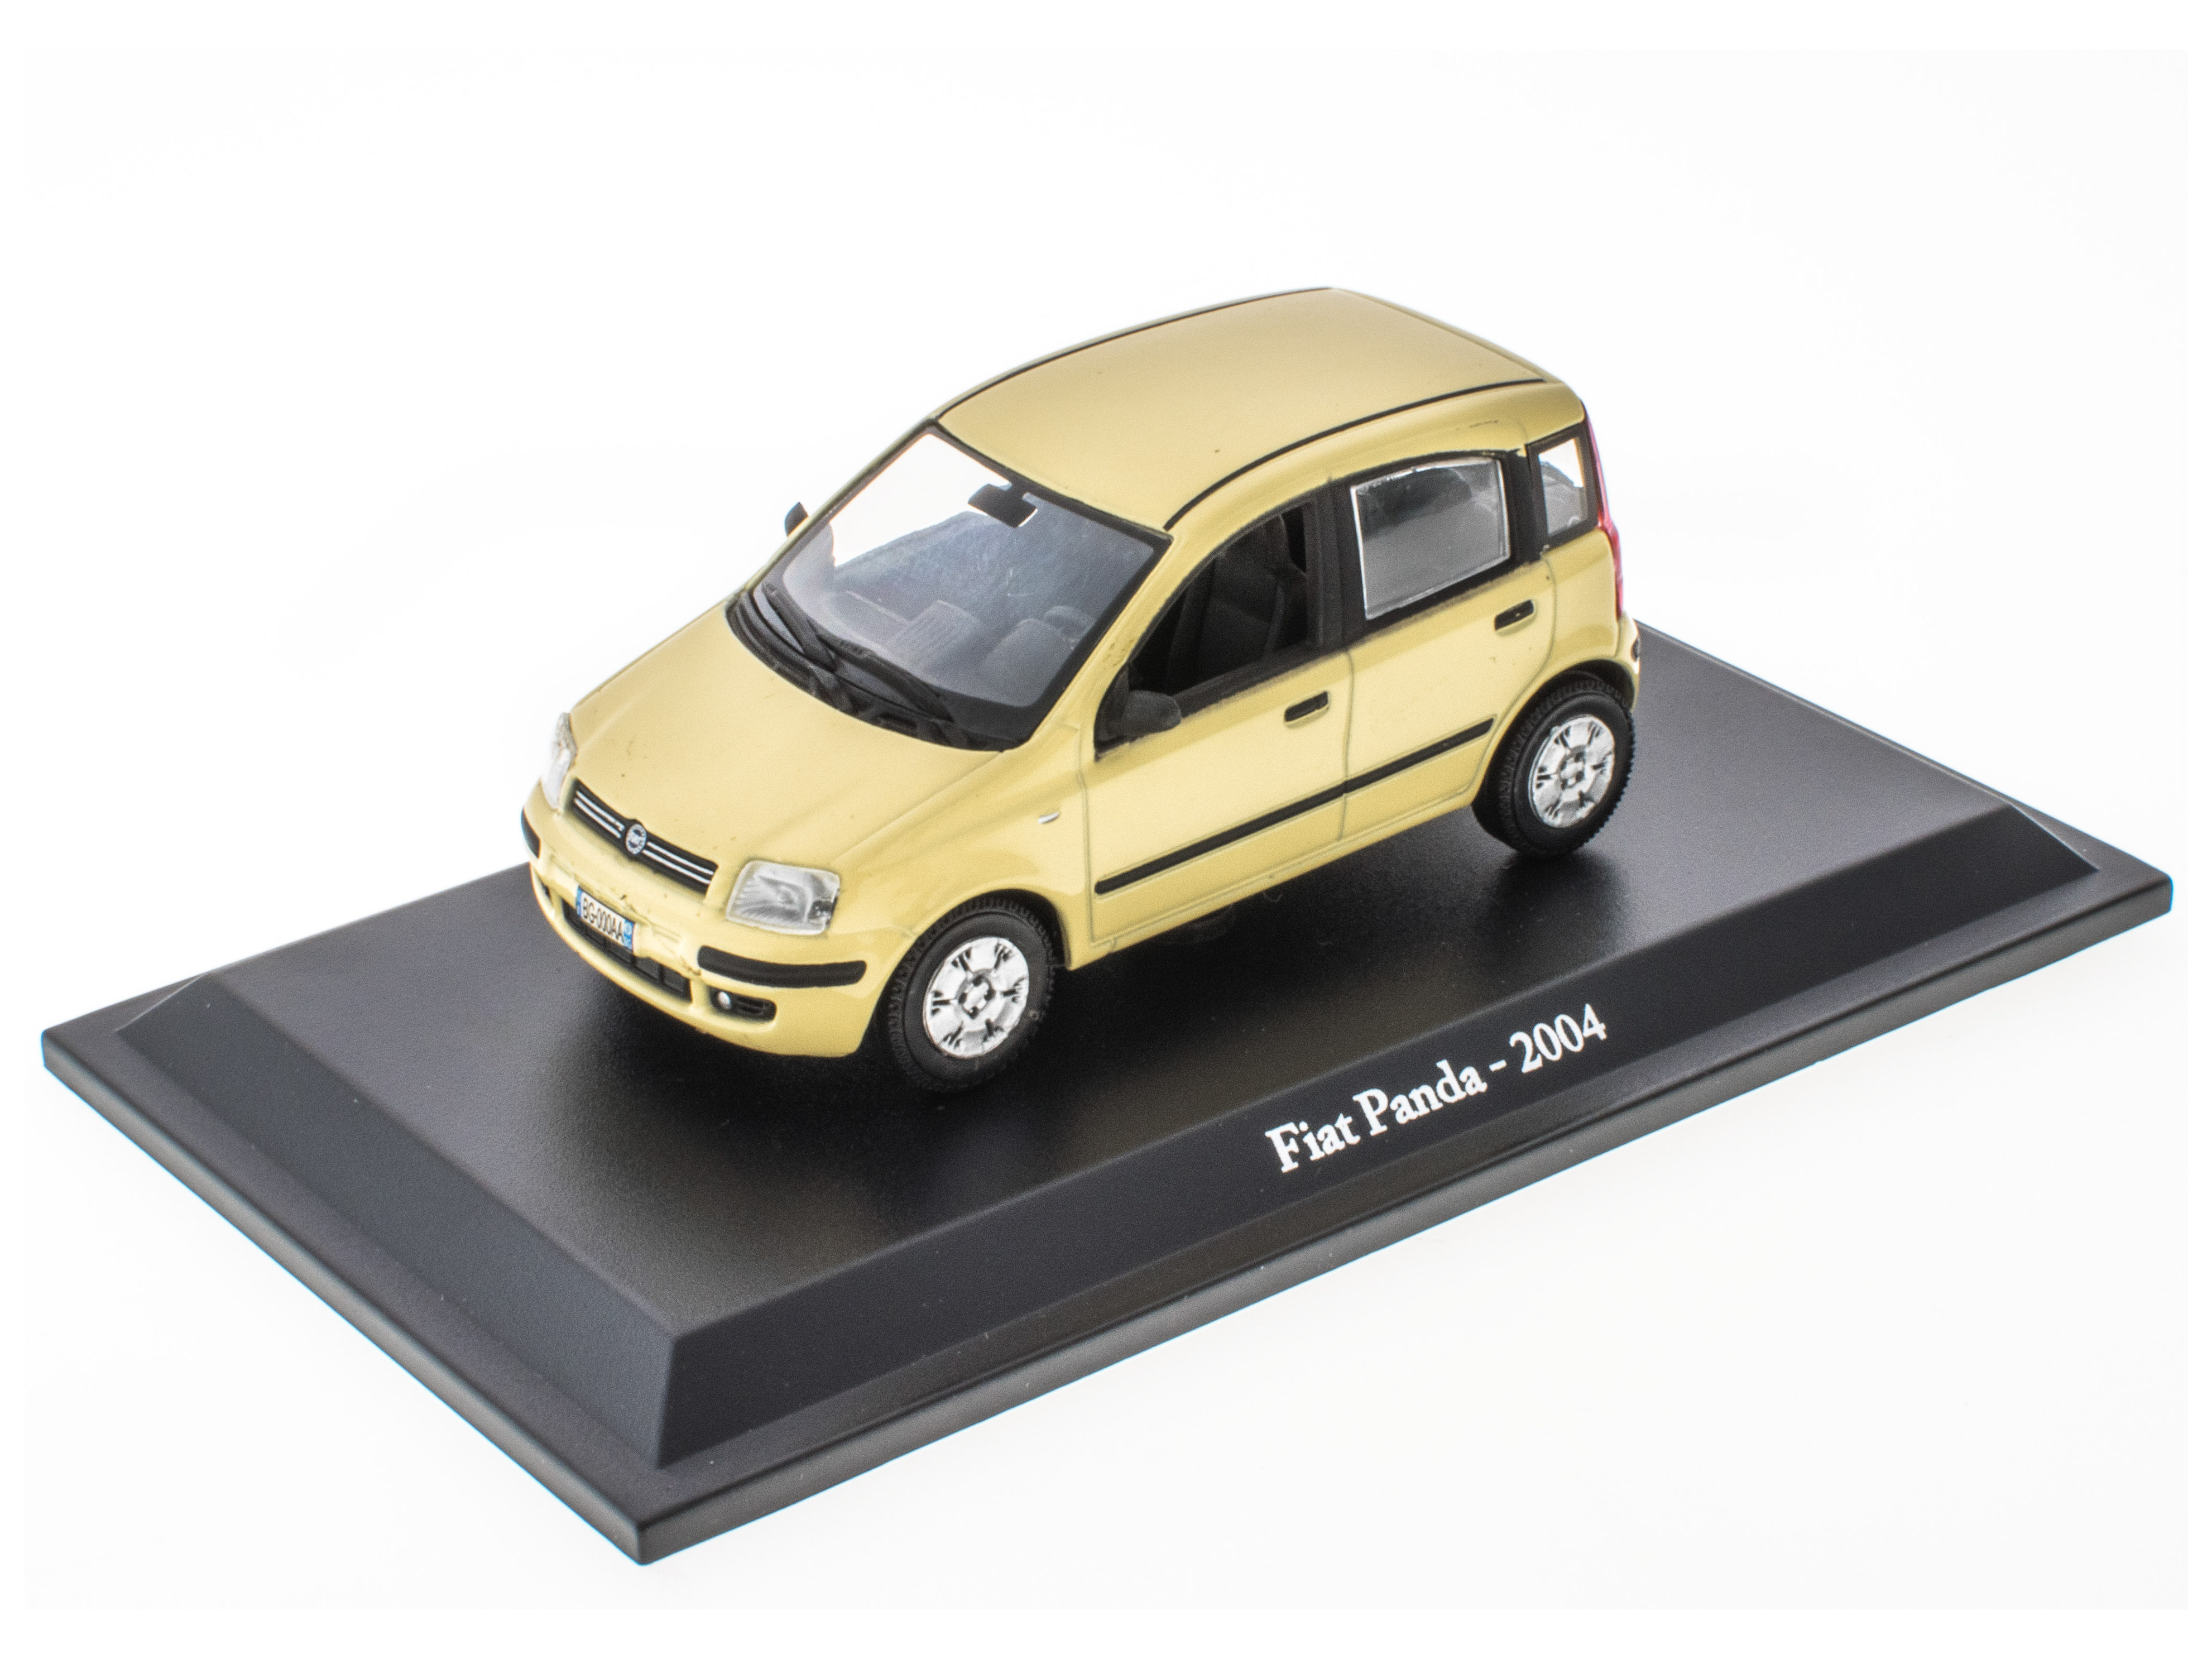 Fiat Panda - 2004